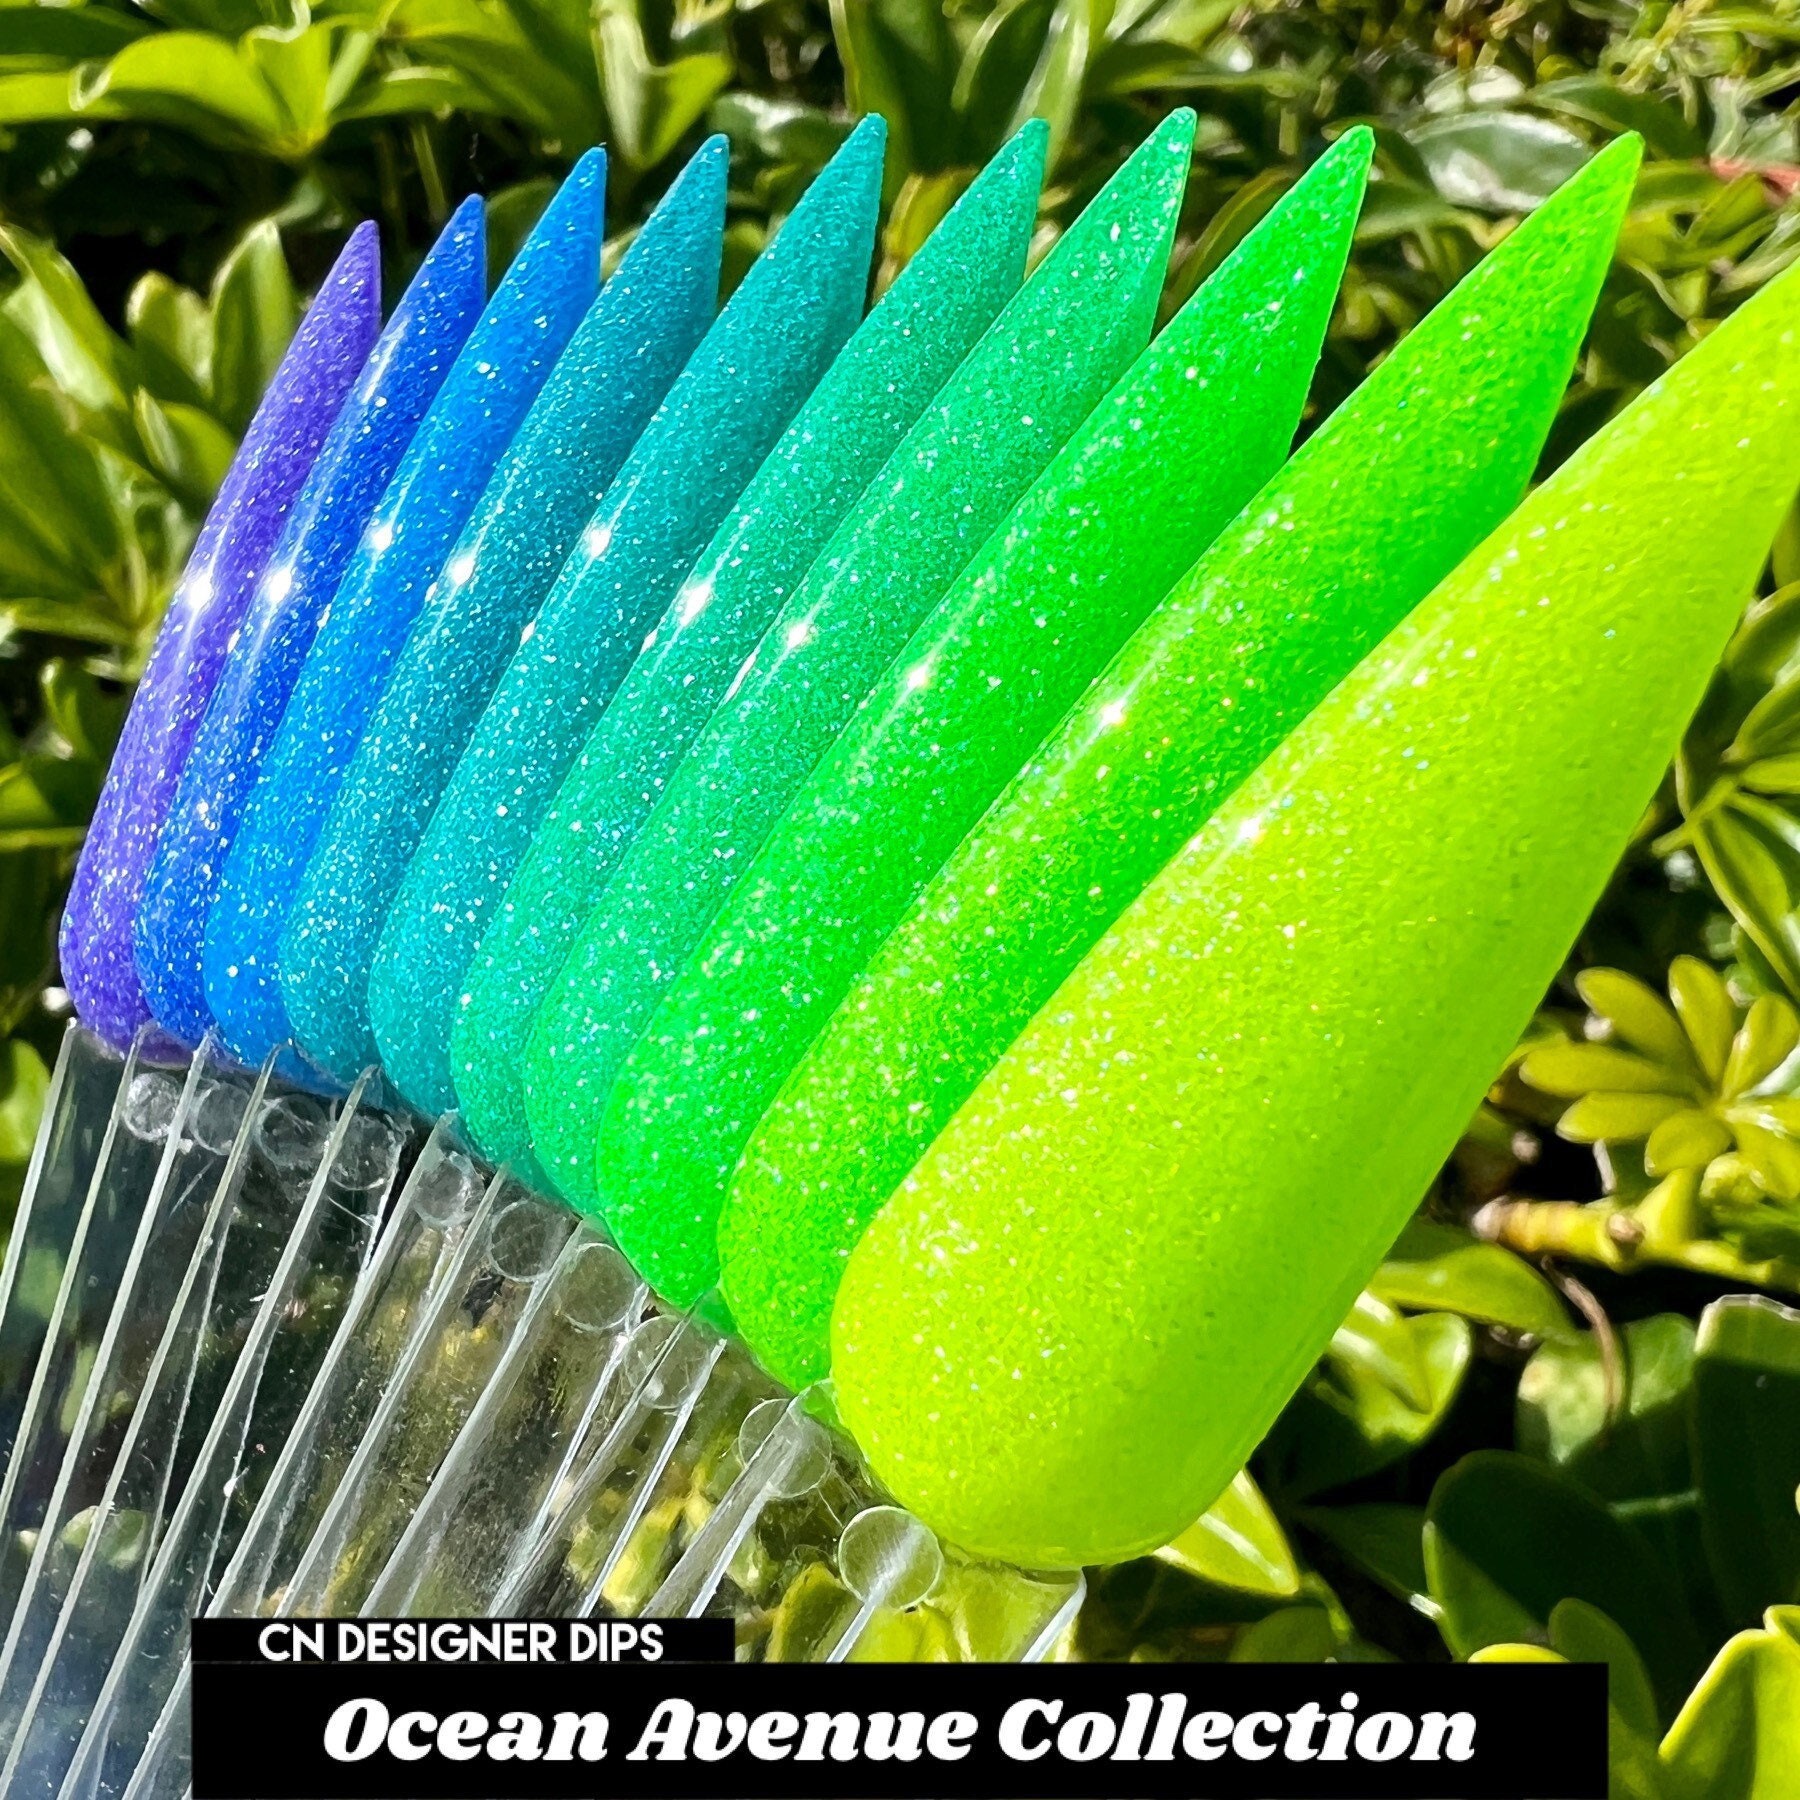 Ocean Ave Collection - Dippulver, Dippulver Für Nägel, Dip-Pulver, Dip-Nagelpulver, Neon-Dip-Pulver, Acryl, Nagel, Acrylpulver von Etsy - CNDesignerDips